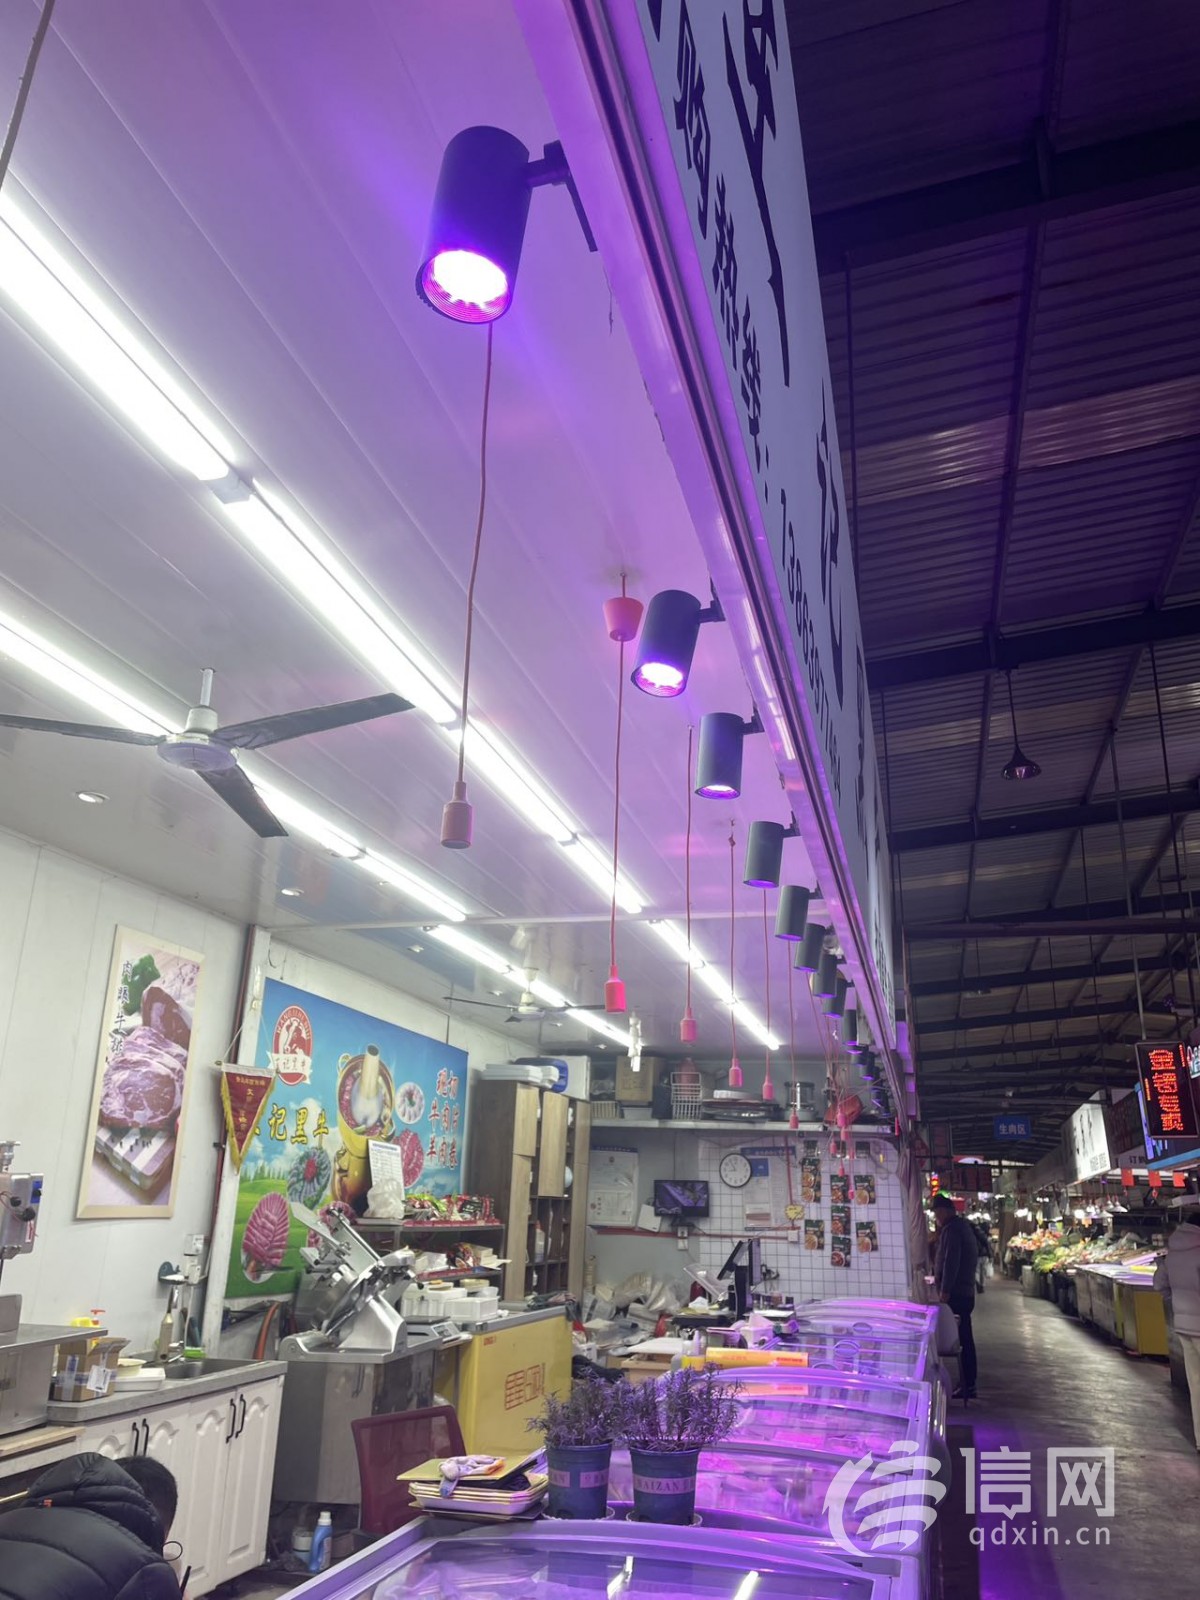 鲜牛肉的摊位门头上挂的筒灯发出明显的紫色光。(来源：信网 记者 赵彦阅 摄)